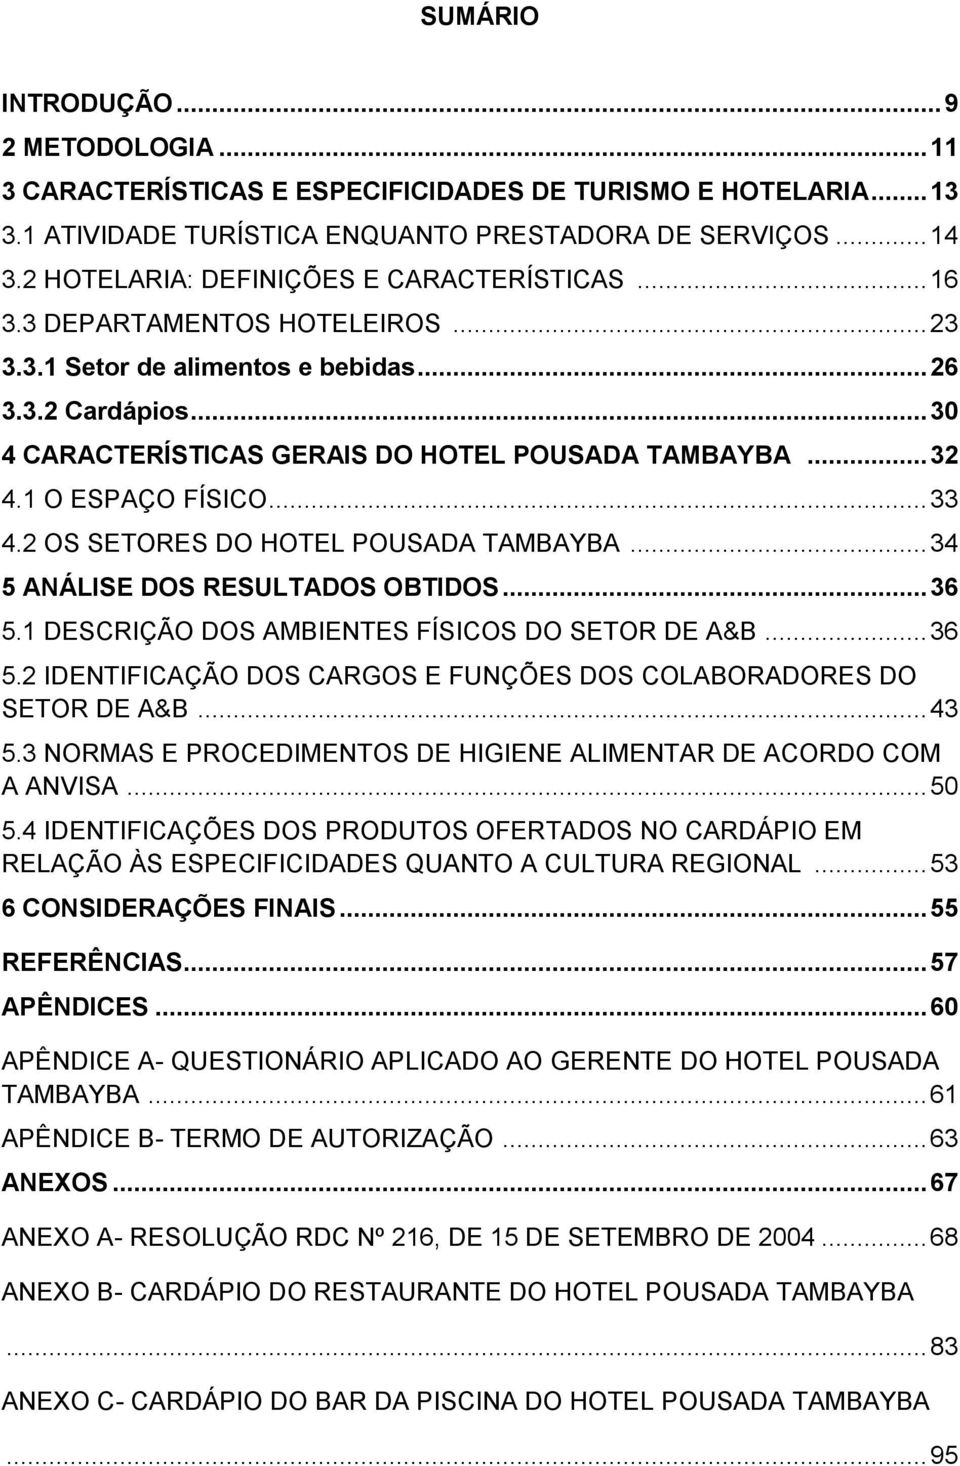 .. 32 4.1 O ESPAÇO FÍSICO... 33 4.2 OS SETORES DO HOTEL POUSADA TAMBAYBA... 34 5 ANÁLISE DOS RESULTADOS OBTIDOS... 36 5.1 DESCRIÇÃO DOS AMBIENTES FÍSICOS DO SETOR DE A&B... 36 5.2 IDENTIFICAÇÃO DOS CARGOS E FUNÇÕES DOS COLABORADORES DO SETOR DE A&B.